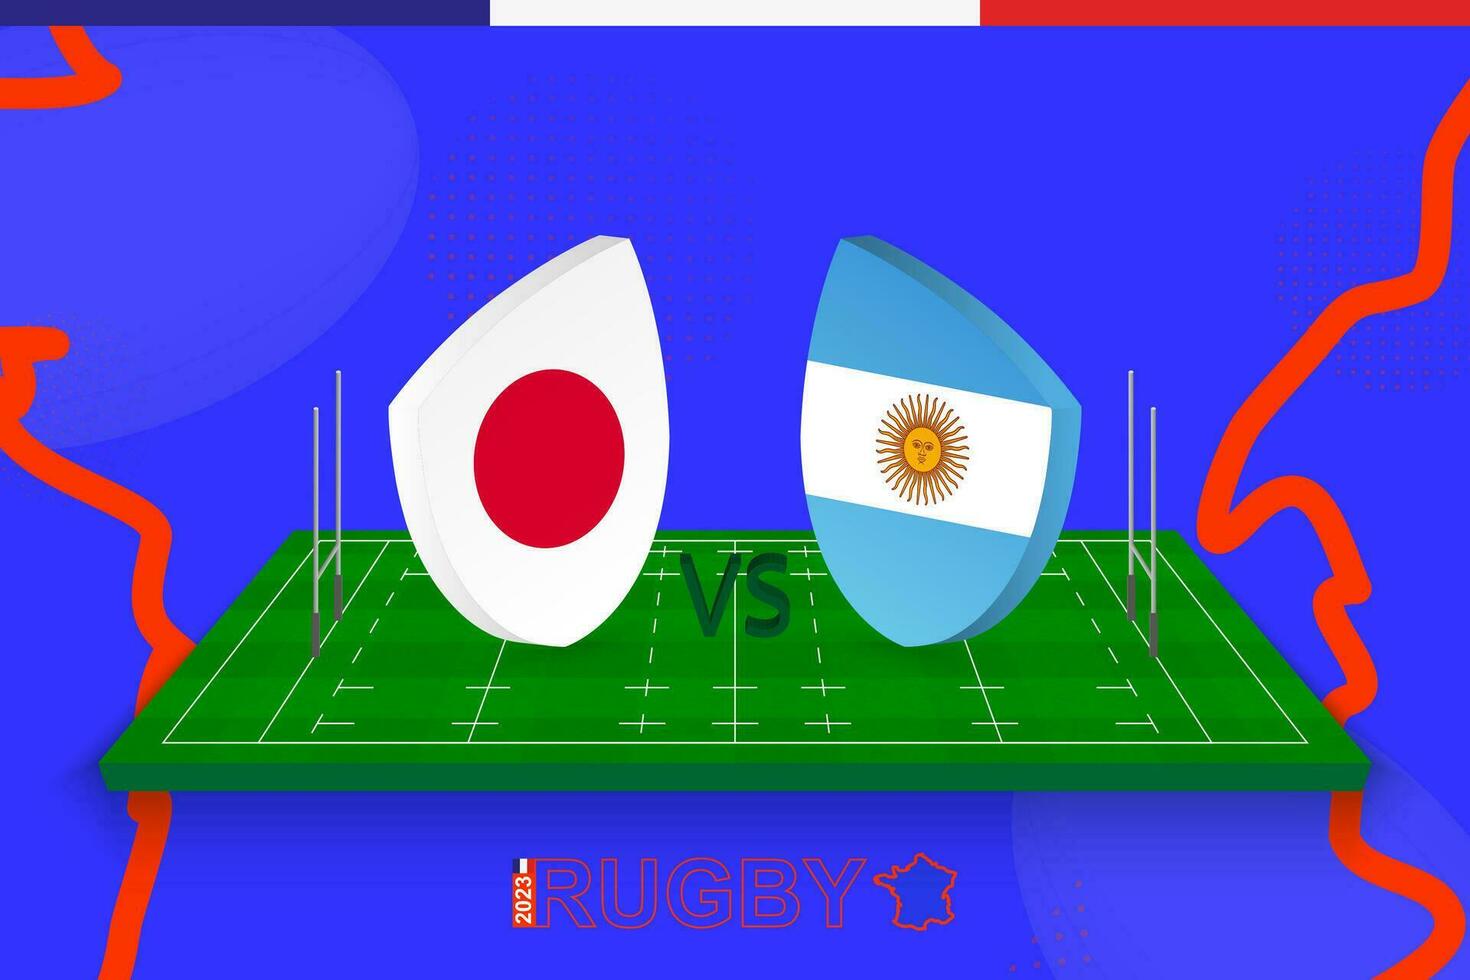 Rugby Mannschaft Japan vs. Argentinien auf Rugby Feld. Rugby Stadion auf abstrakt Hintergrund zum International Meisterschaft. vektor